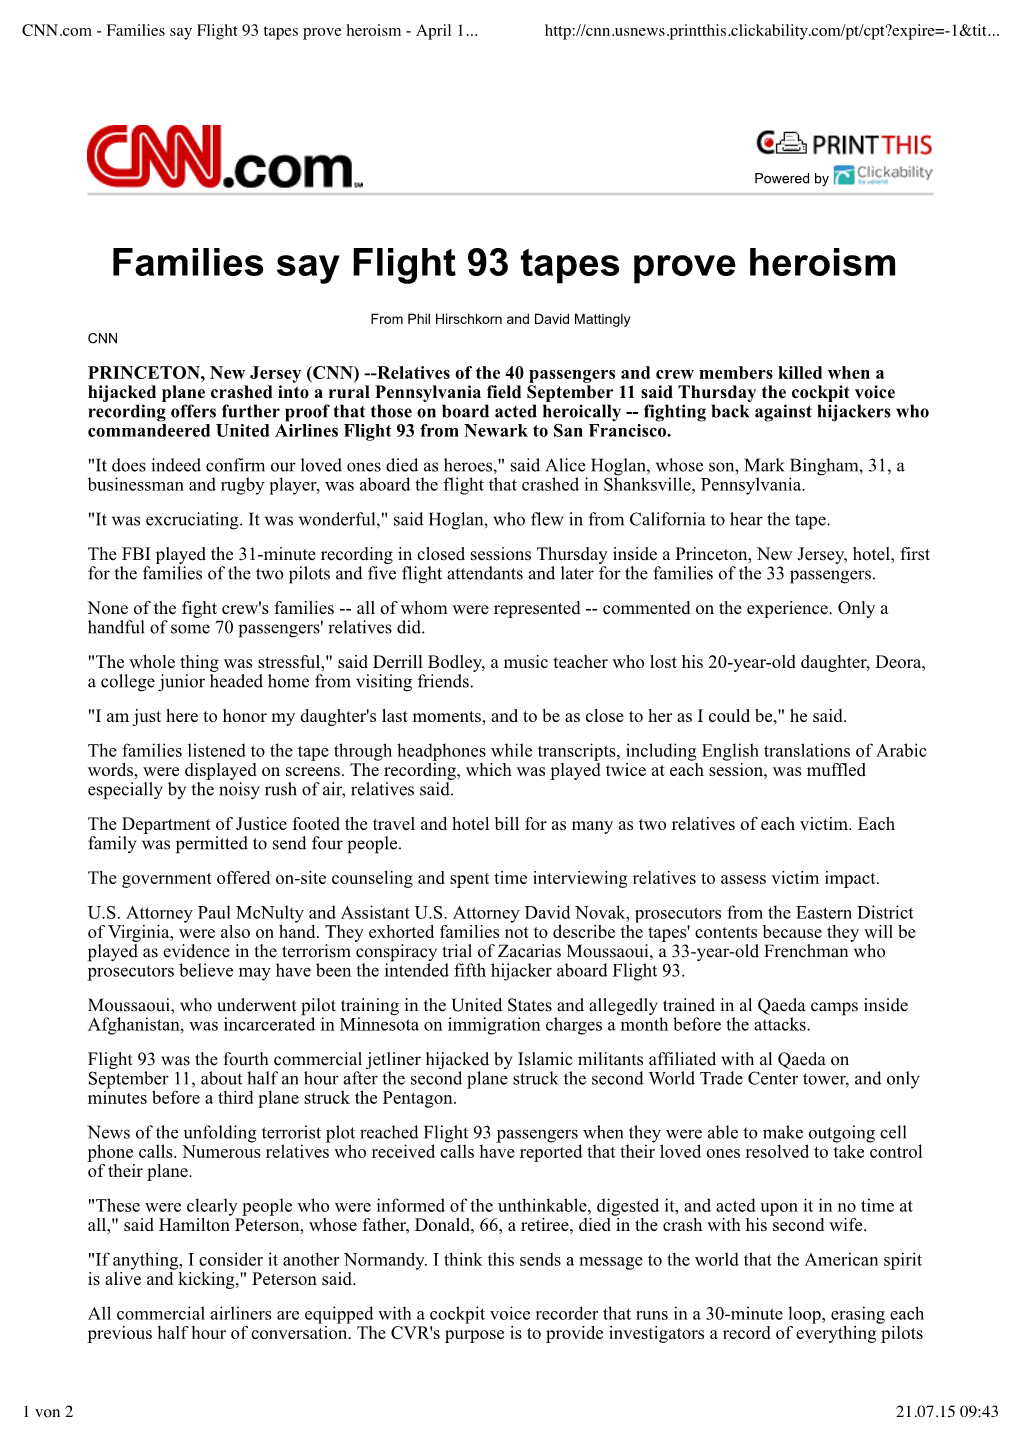 CNN.Com - Families Say Flight 93 Tapes Prove Heroism - April 1